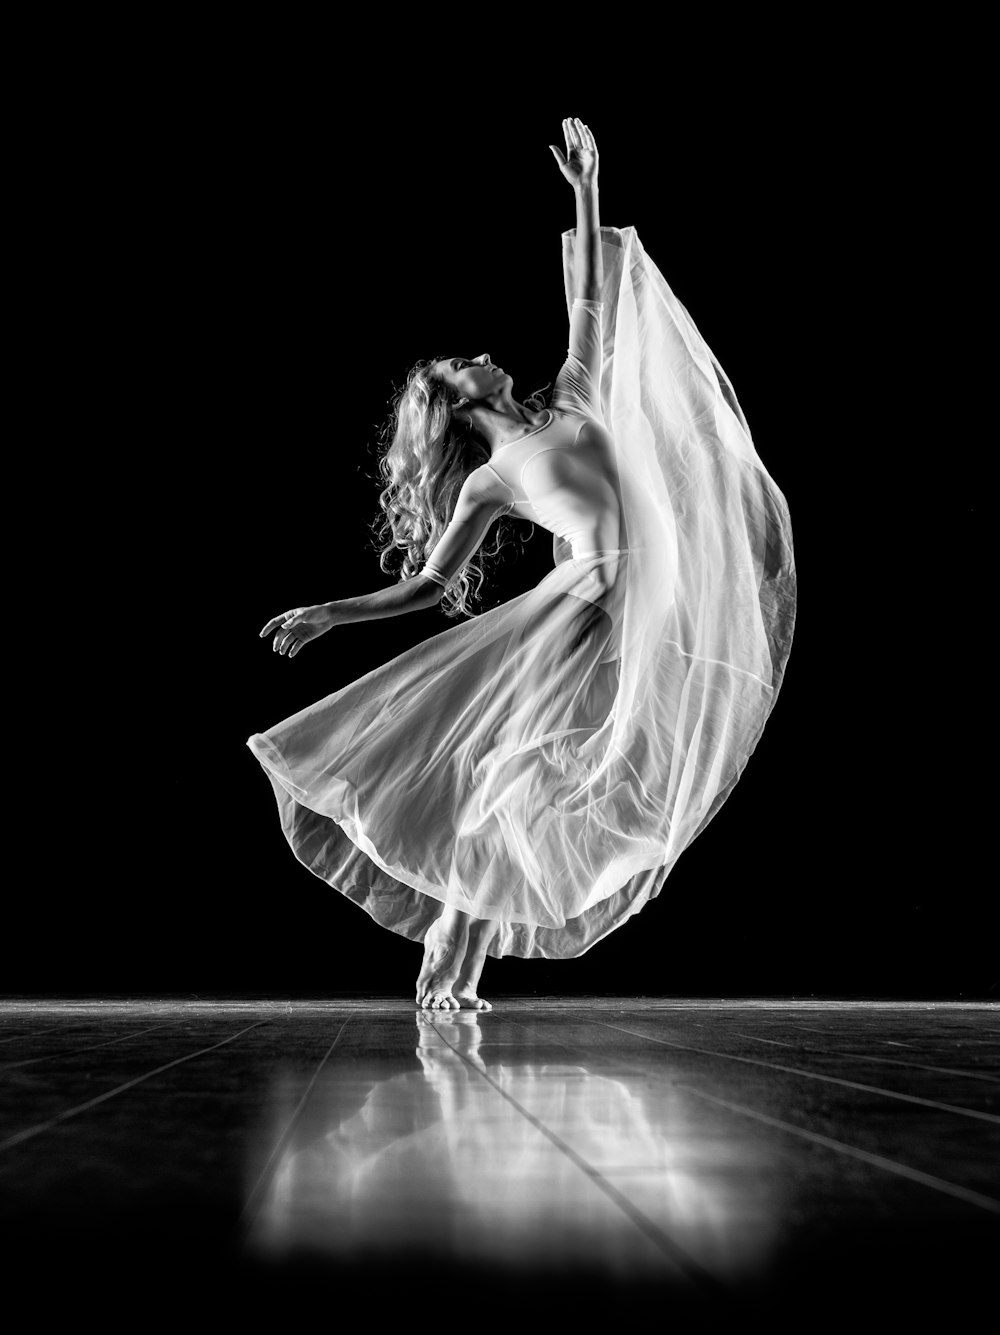 fotografia in scala di grigi di donna che fa balletto